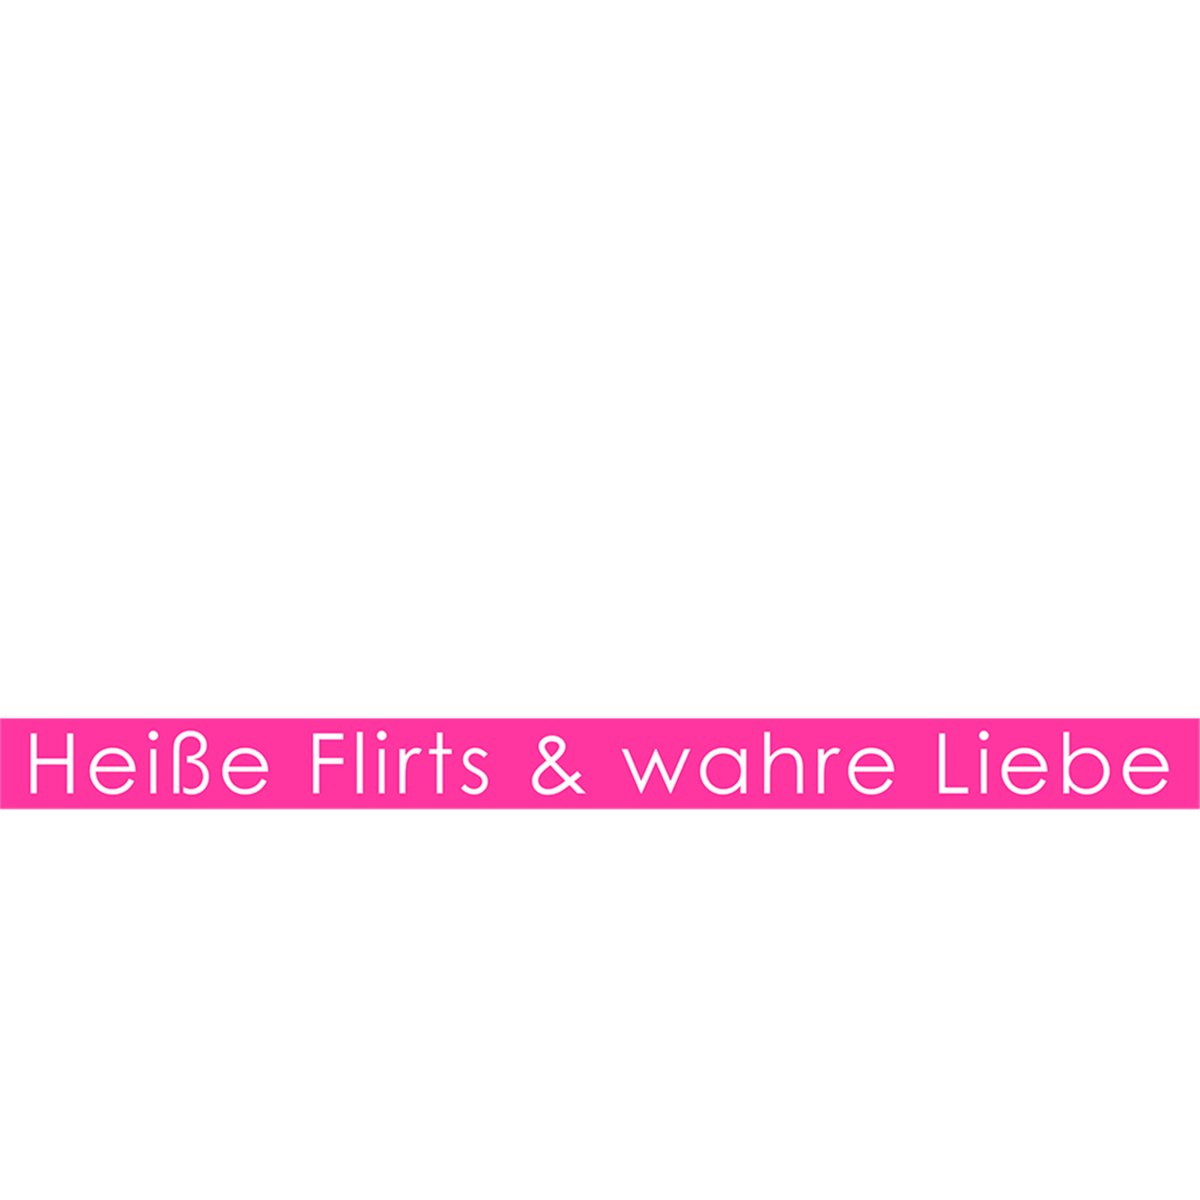 Gucken 2017 love island kostenlos Love Island